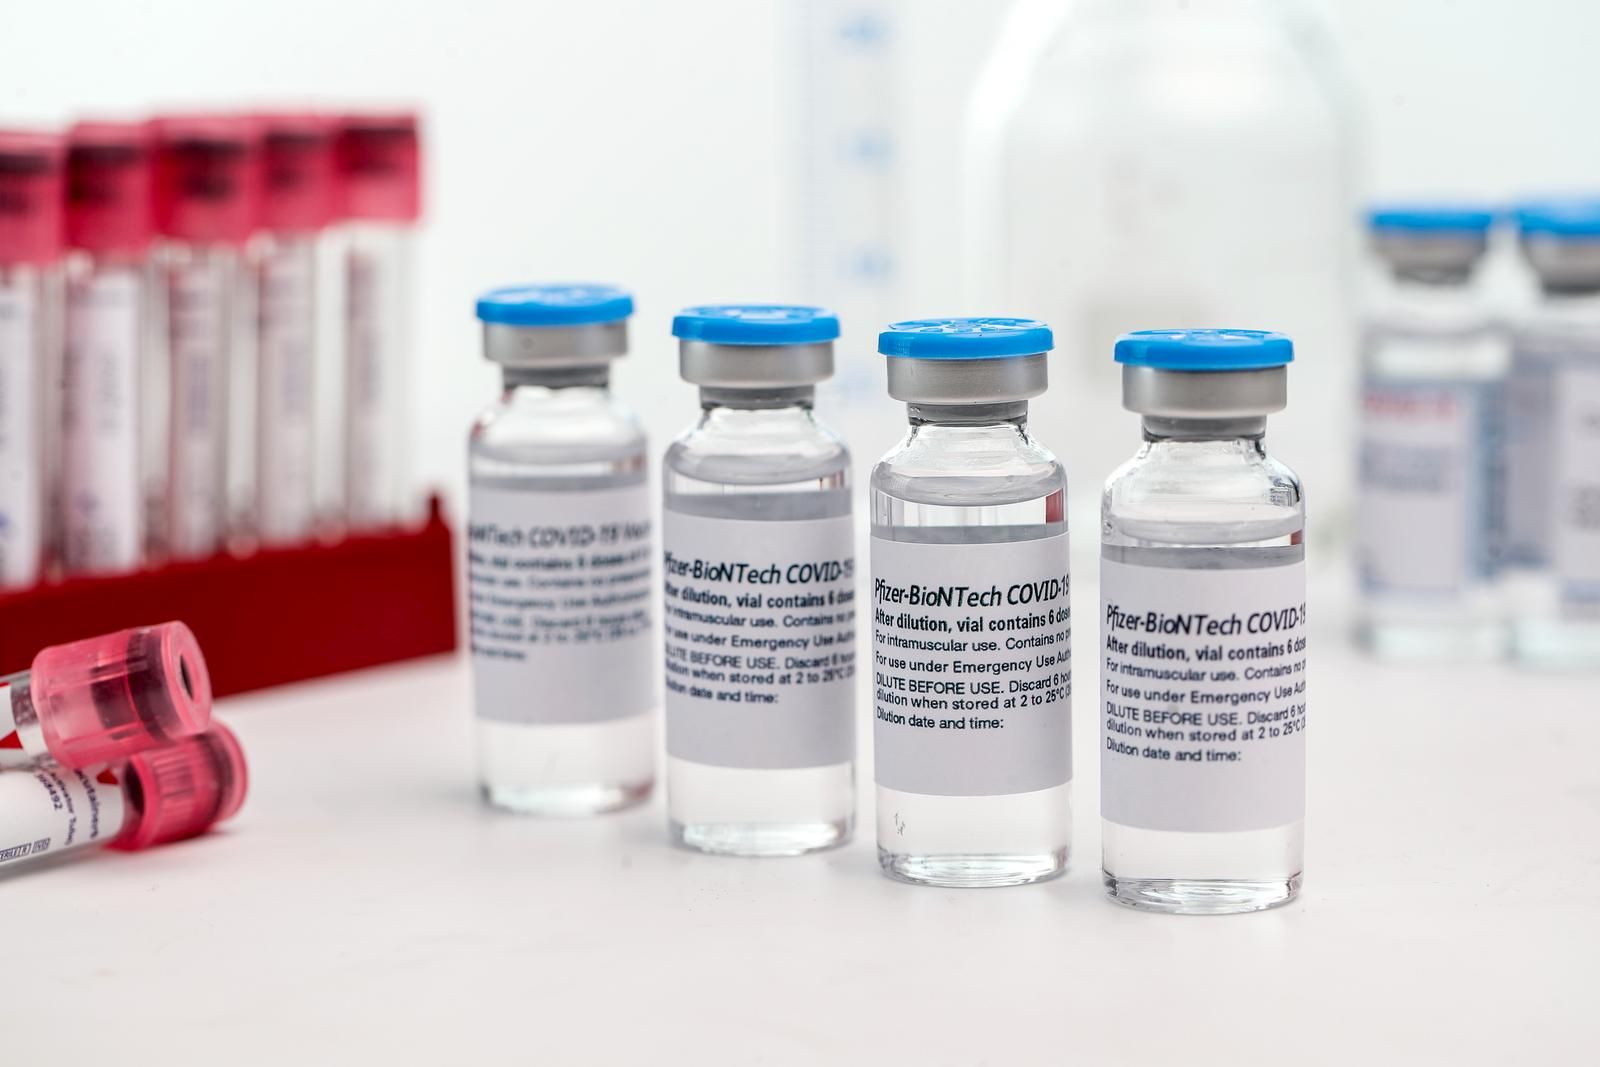 08.11.2021., Zagreb - Ilustrativna fotografija cjepiva protiv bolesti COVID-19 proizvodjaca Pfizer/BioNTech.